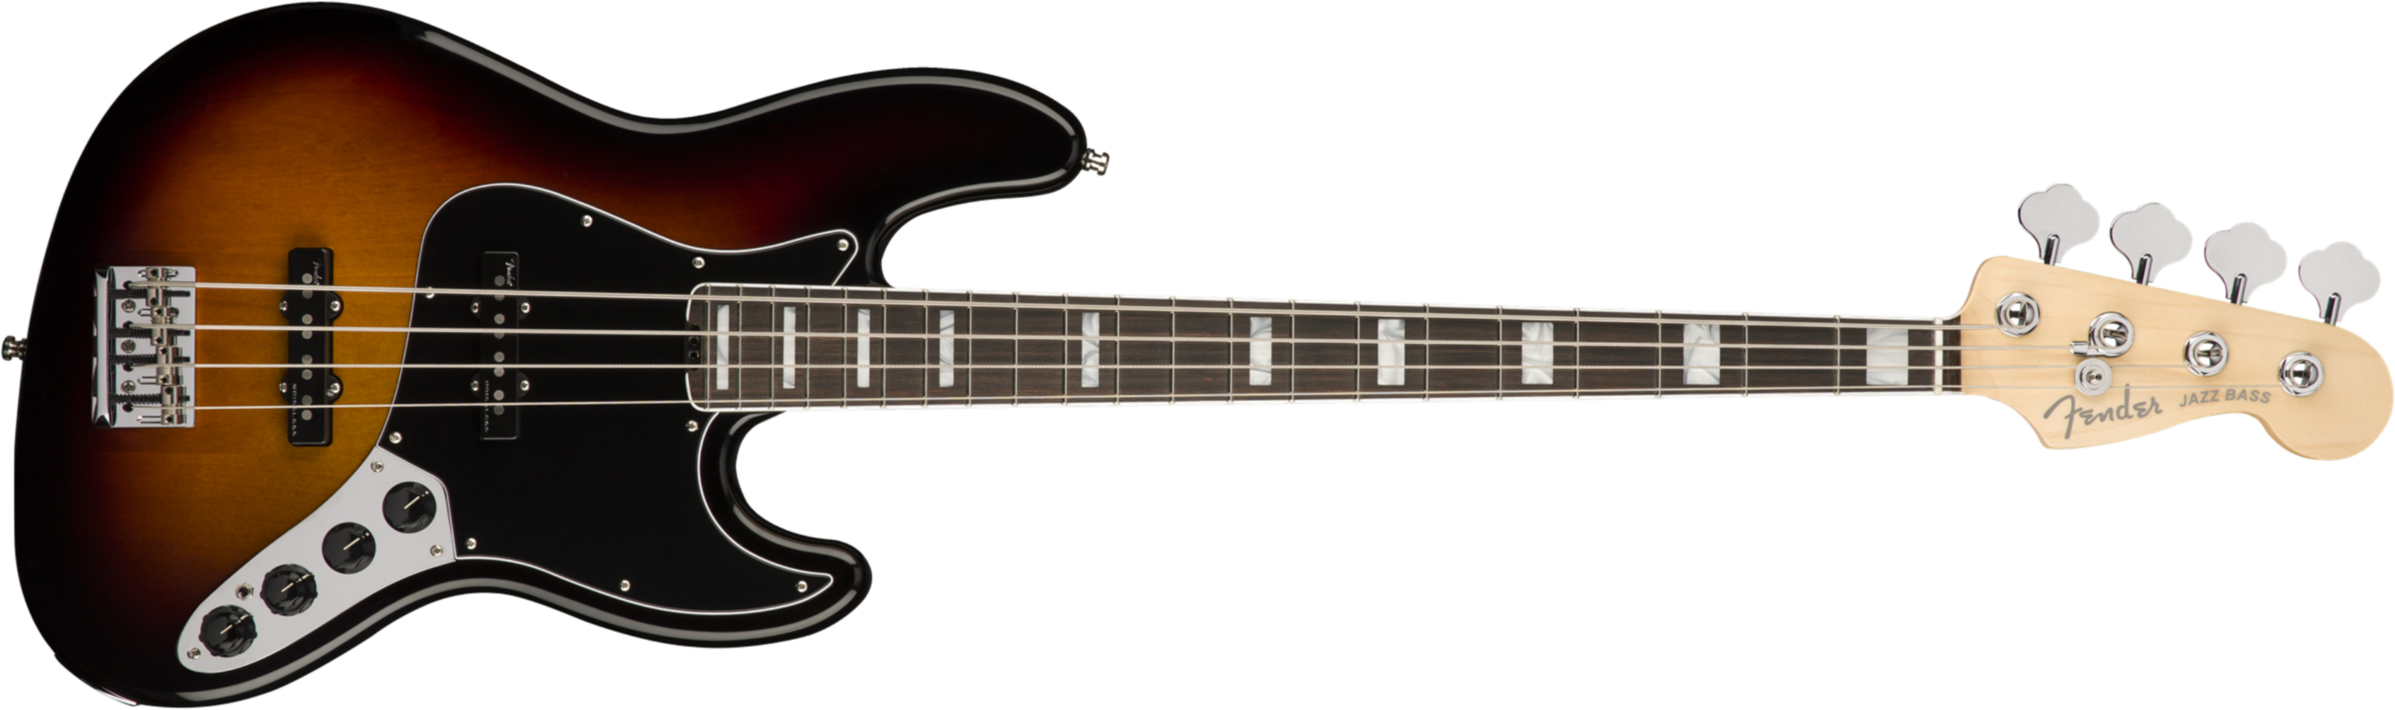 Fender Jazz Bass American Elite 2018 Usa Eb - 3 Color Sunburst - Bajo eléctrico de cuerpo sólido - Main picture